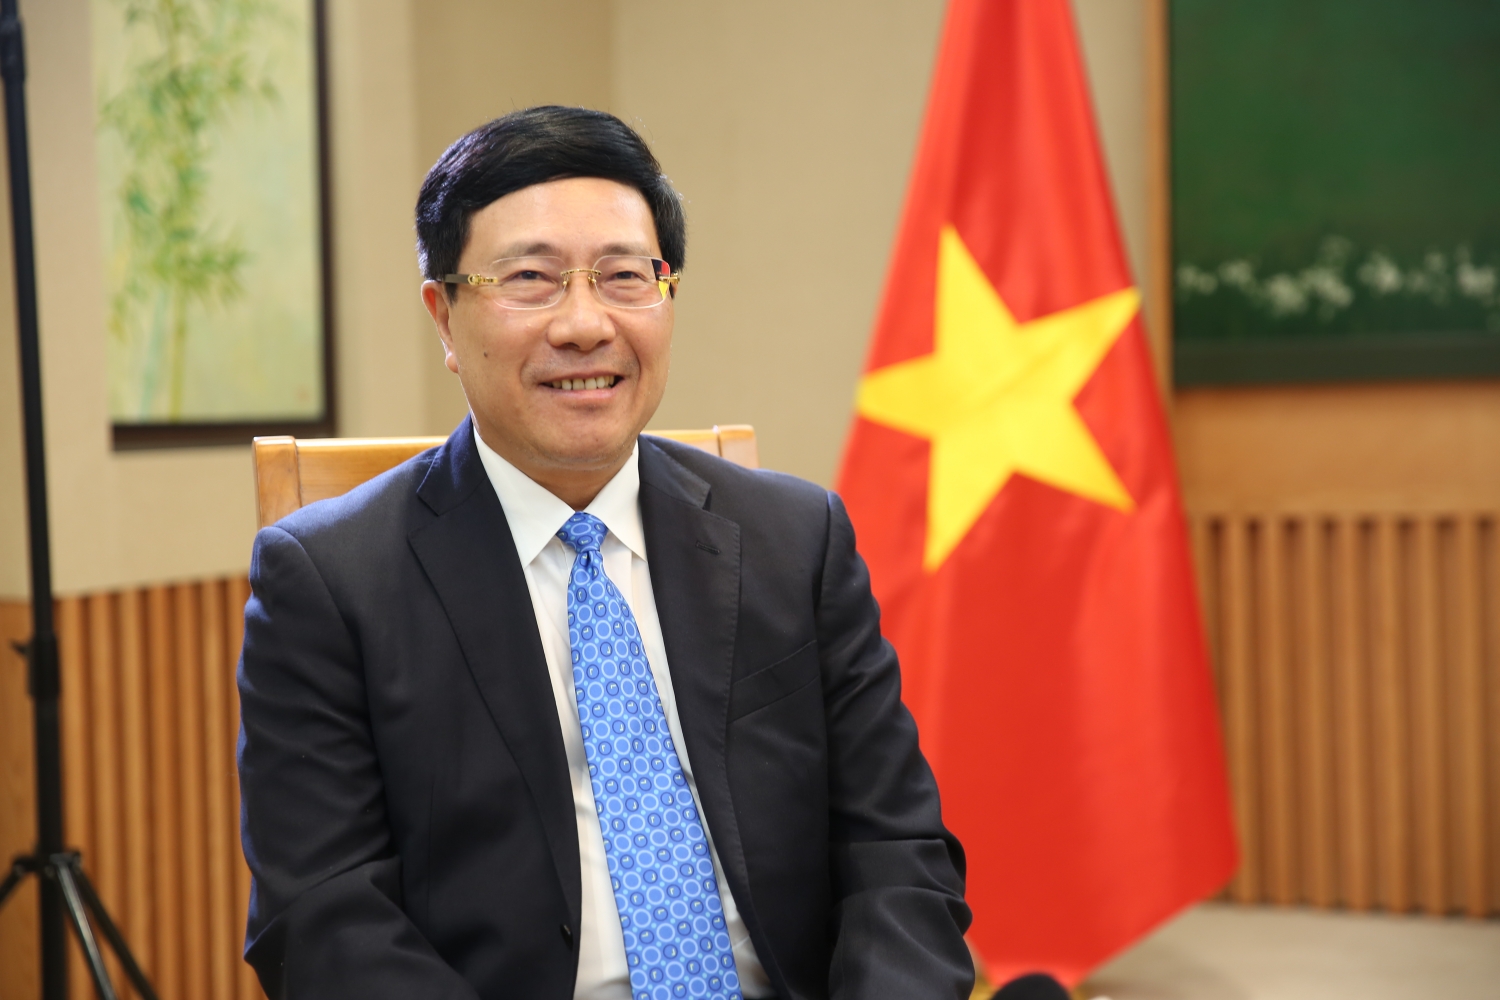 Phó Thủ tướng Phạm Bình Minh chỉ ra 7 ưu tiên cần thúc đẩy trong công tác đối ngoại trong thời gian tới